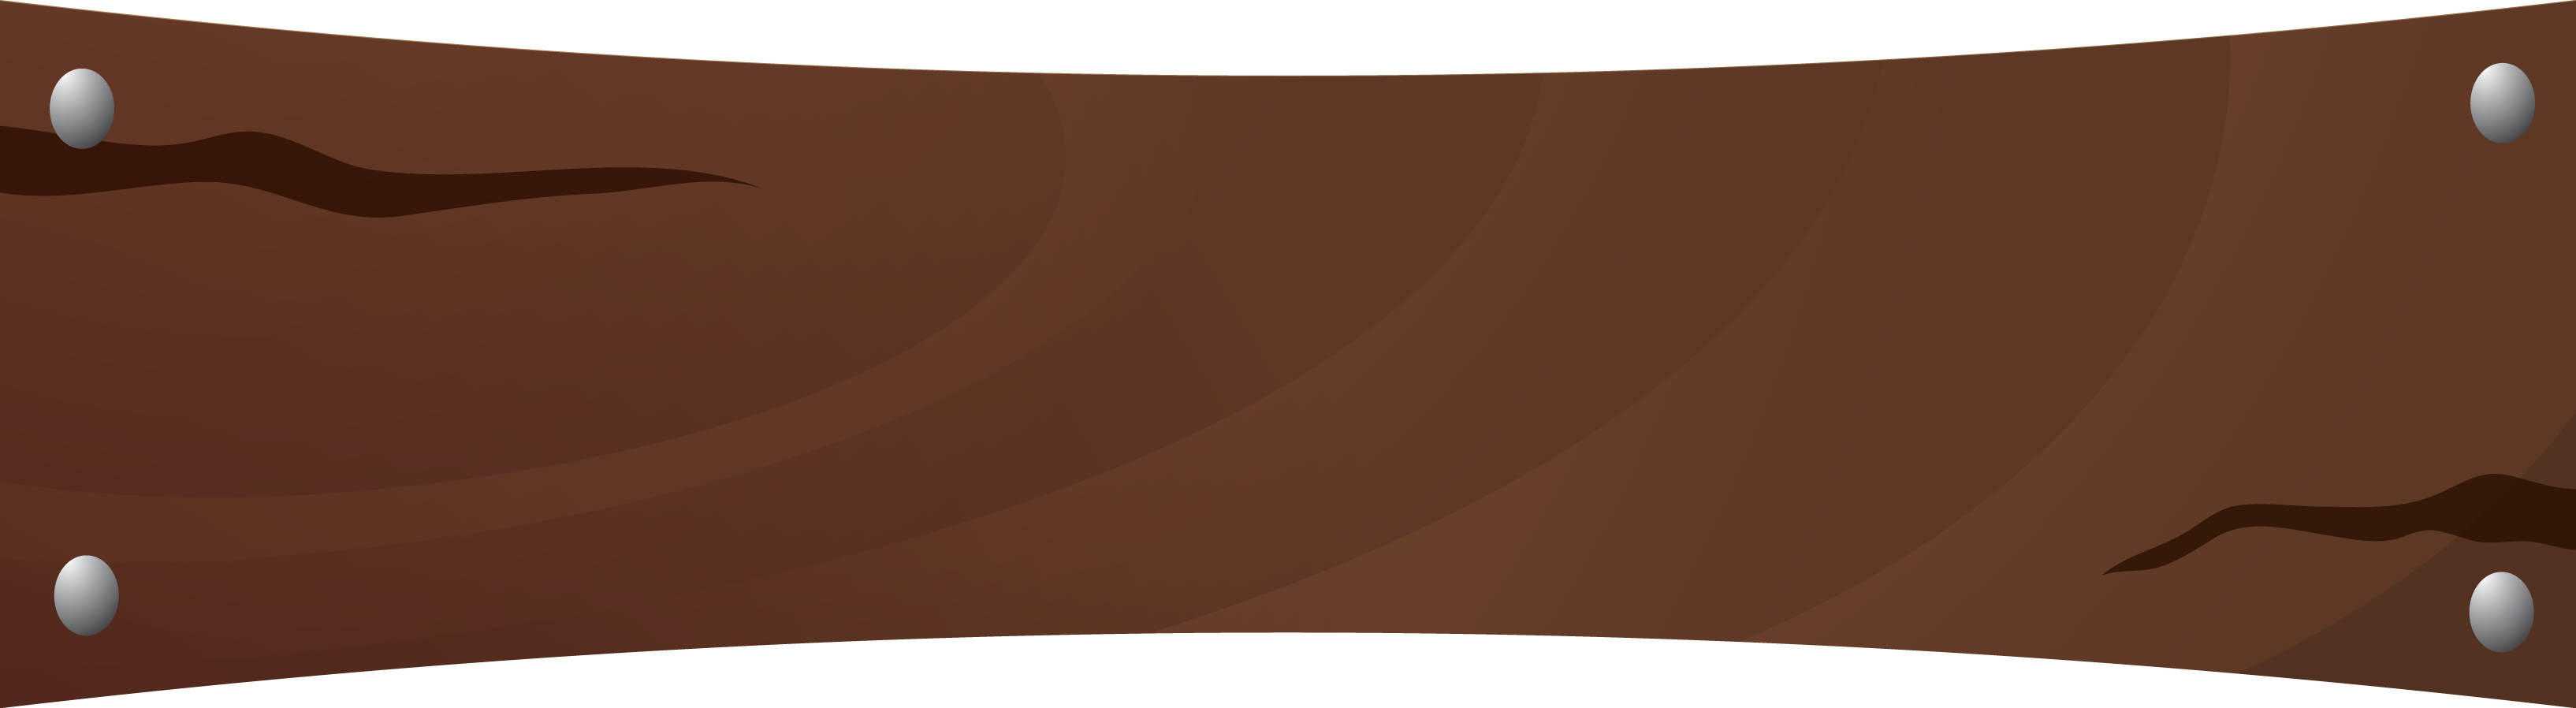 Браун баннер PNG фоновое изображение